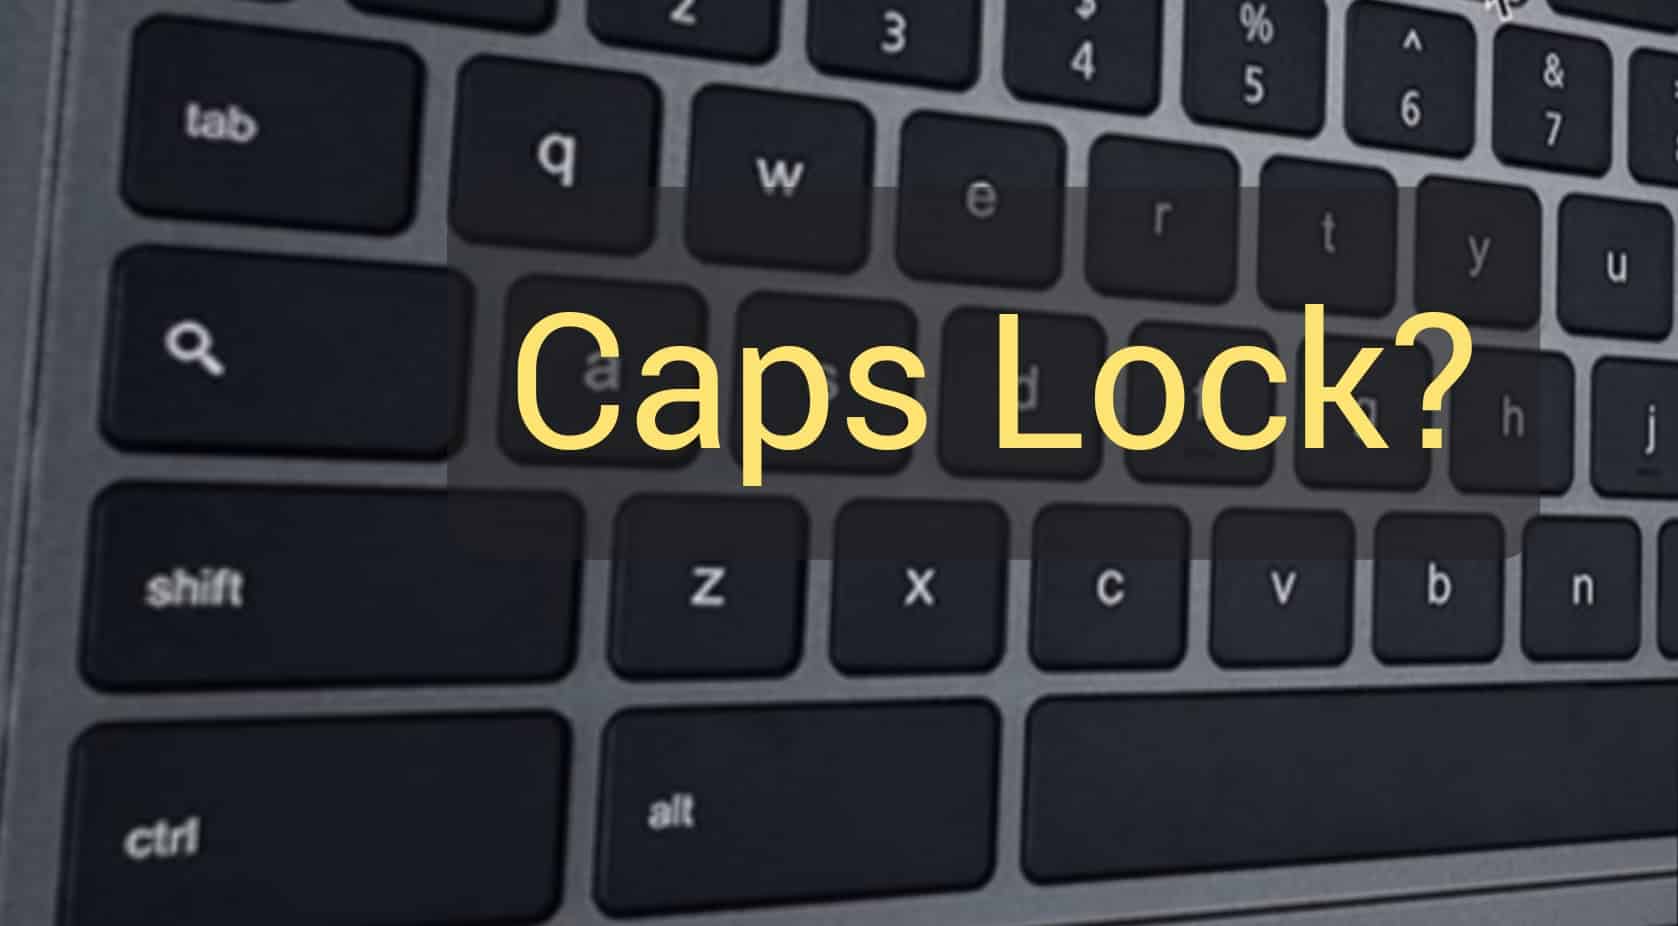 hammerspoon caps lock